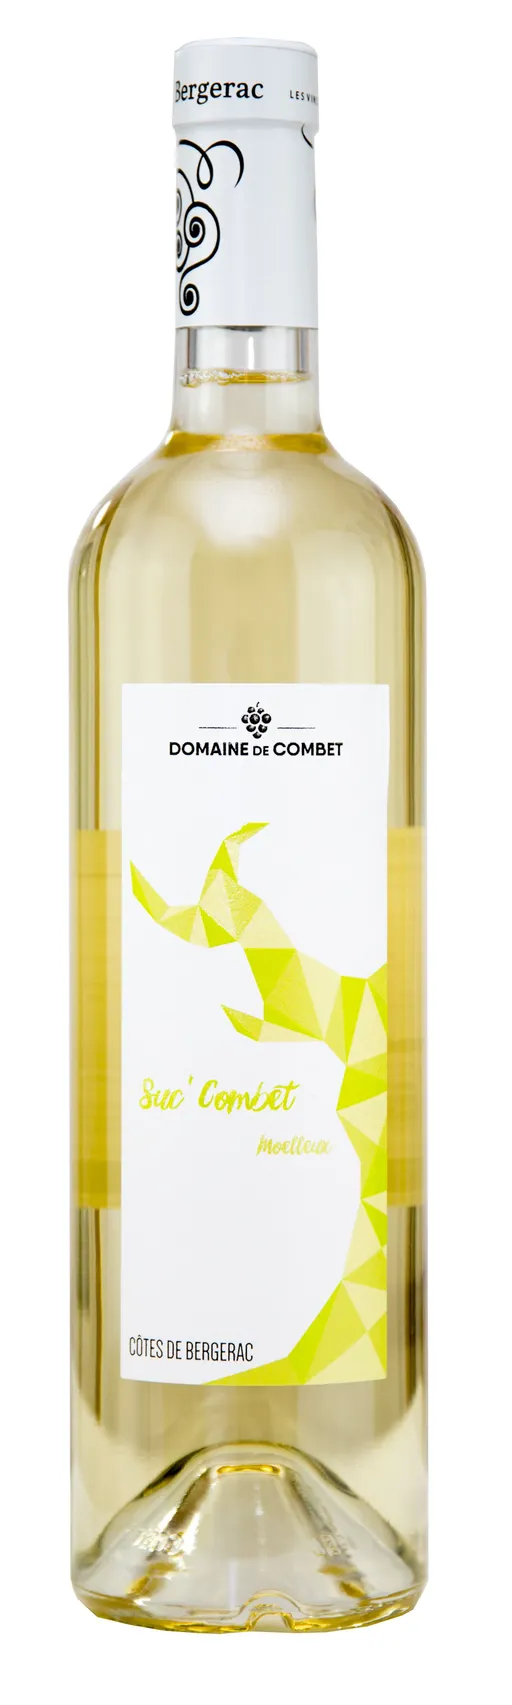 Earl de Combet SUC'COMBET, Blanc, 2021, Côtes de Bergerac. Bottle image